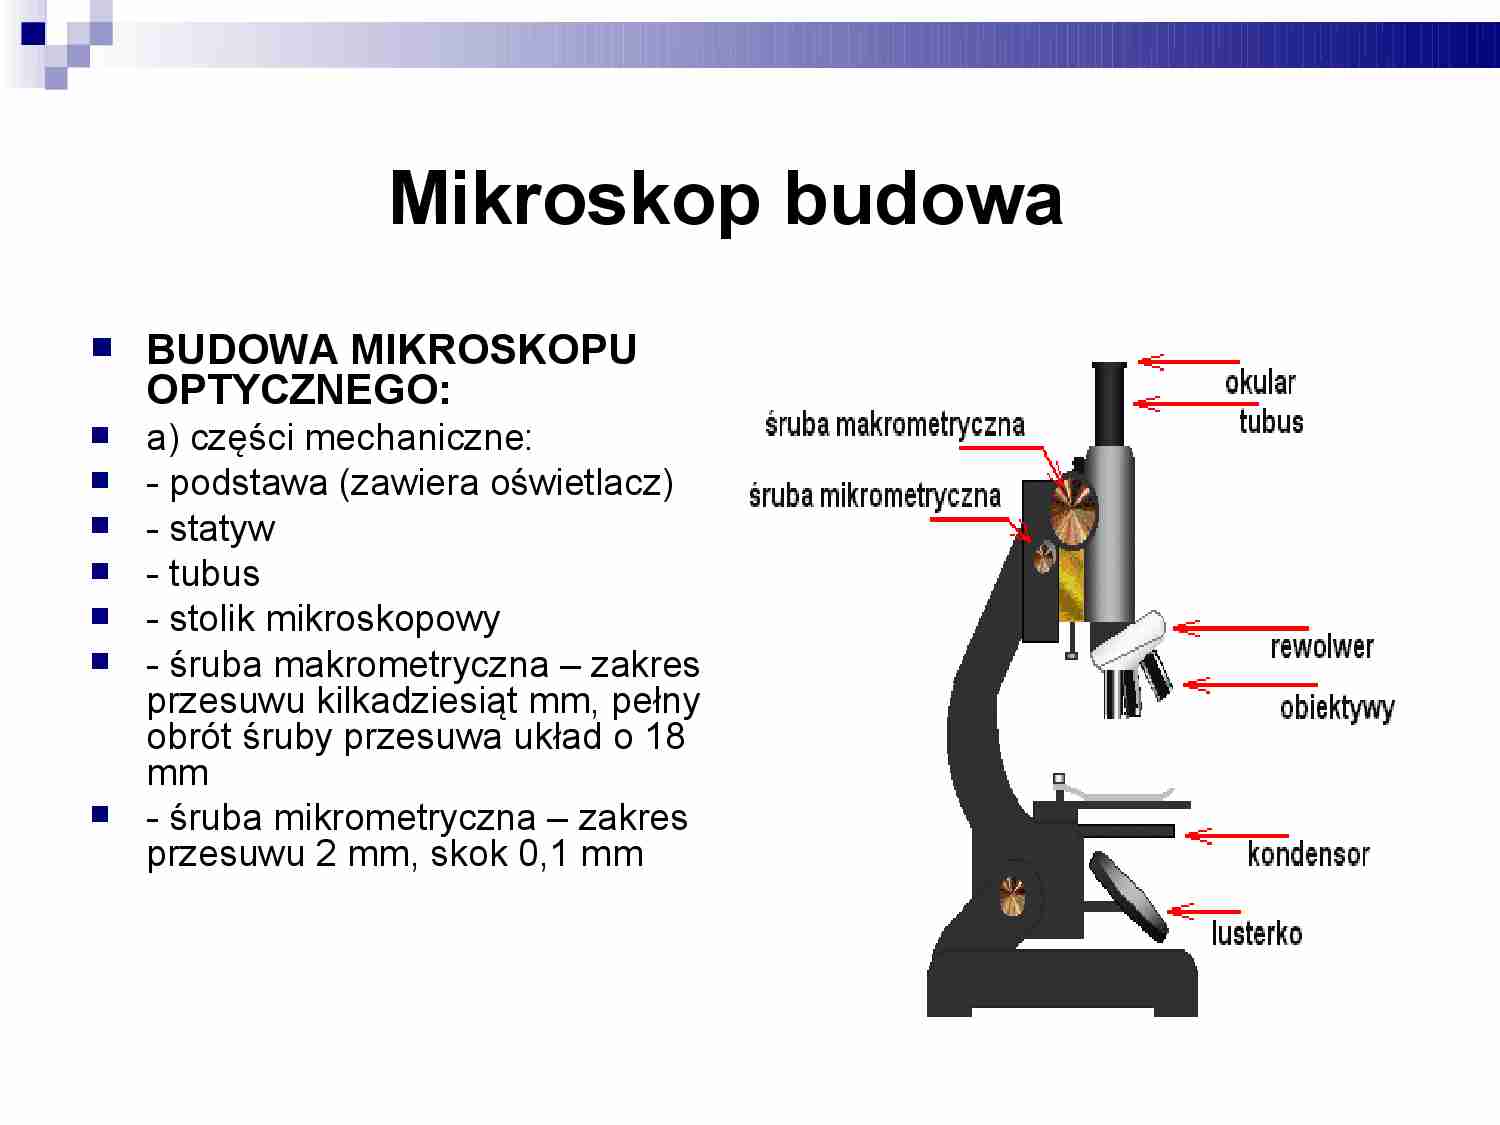 Budowa mikroskopu optycznego - strona 1